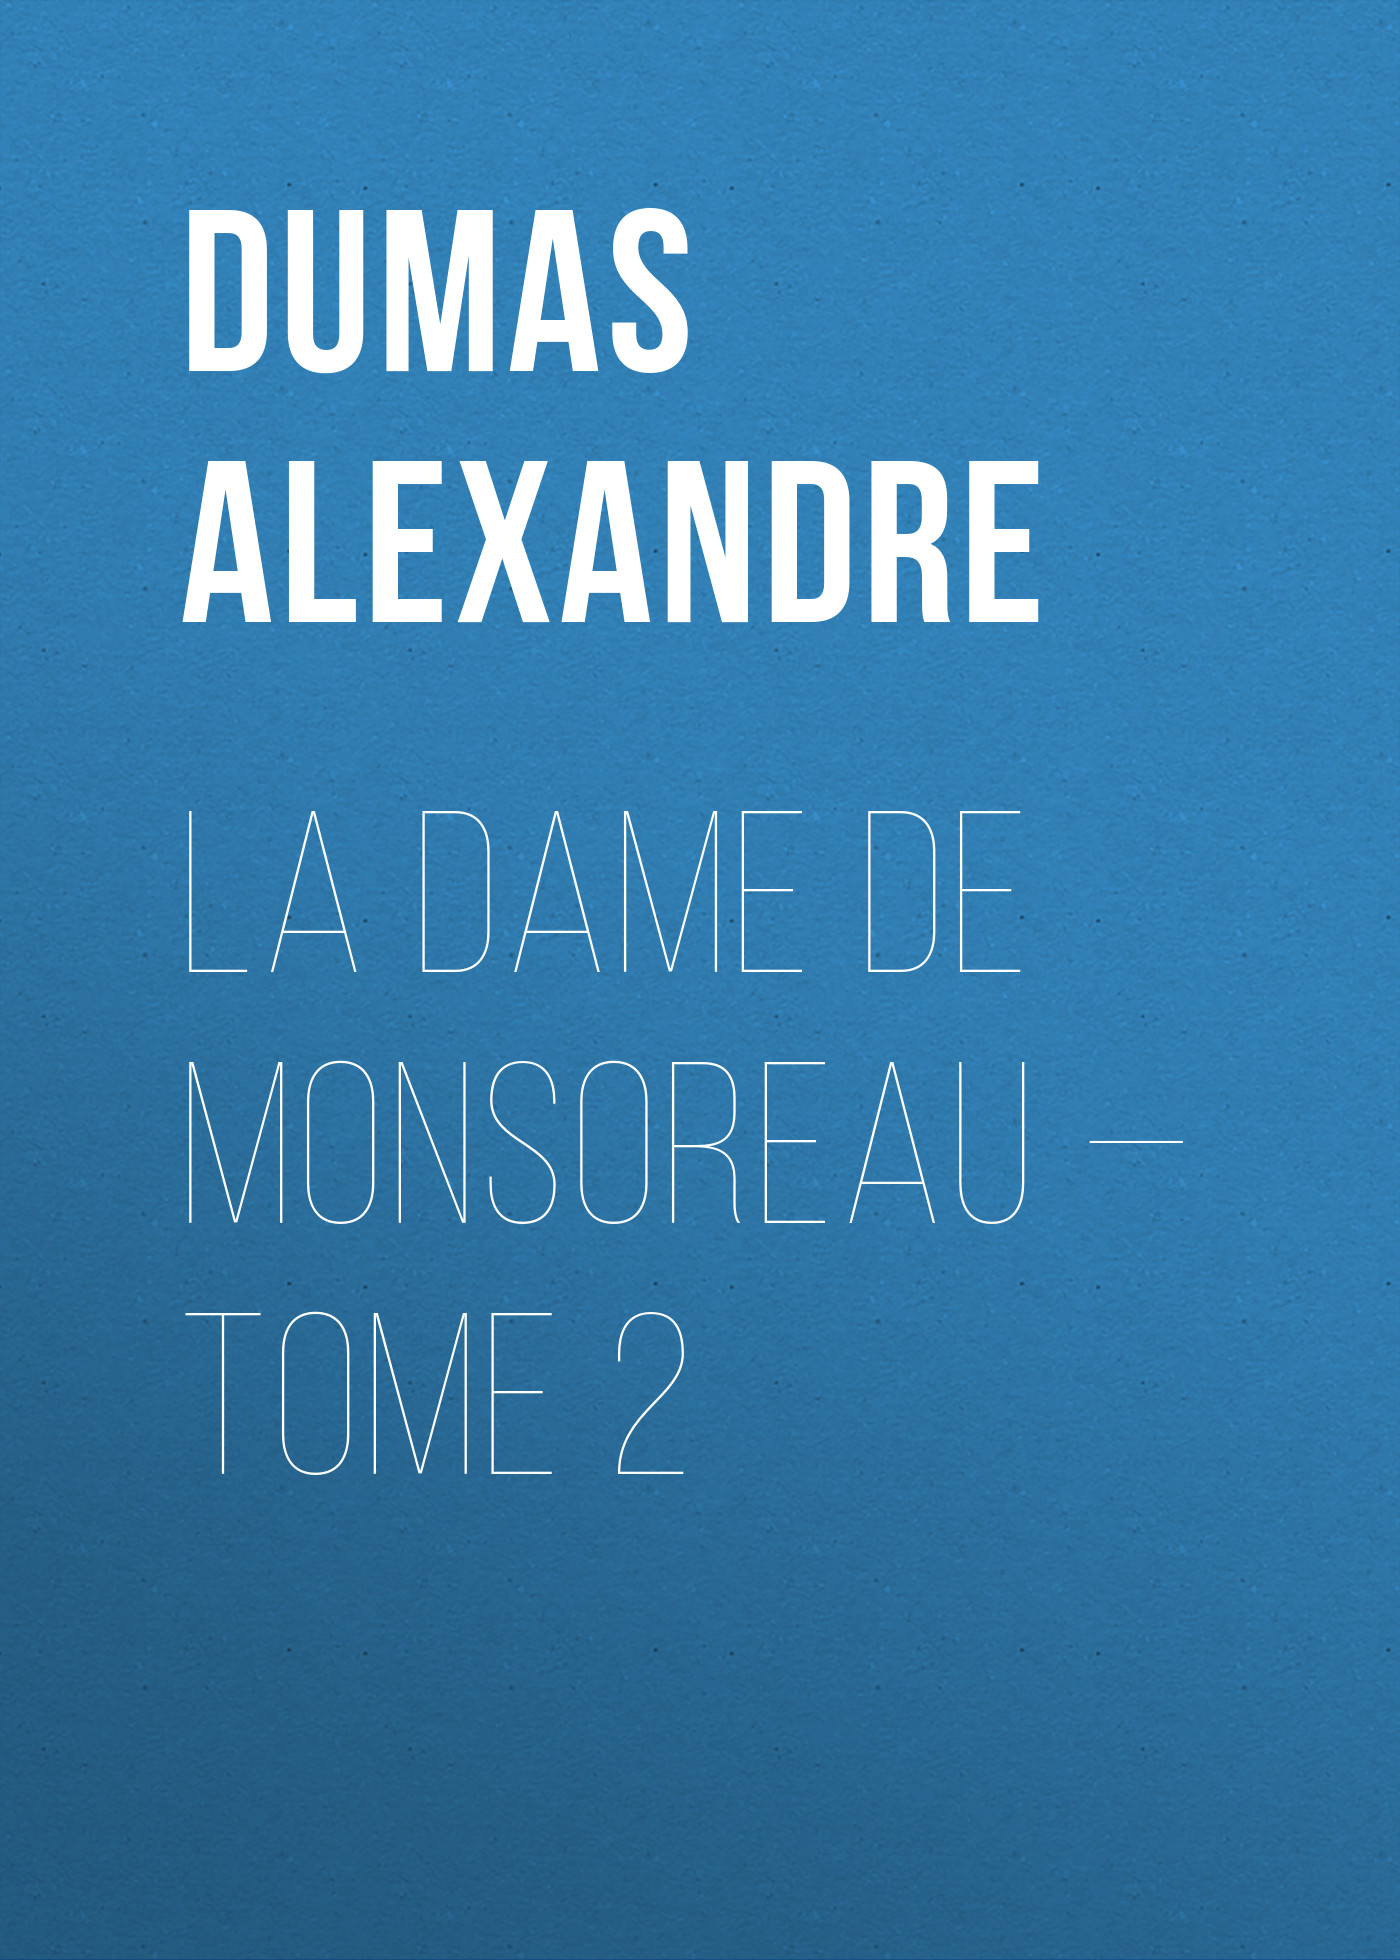 Книга La dame de Monsoreau – Tome 2 из серии , созданная Alexandre Dumas, может относится к жанру Литература 19 века, Зарубежная старинная литература, Зарубежная классика. Стоимость электронной книги La dame de Monsoreau – Tome 2 с идентификатором 25201767 составляет 0 руб.